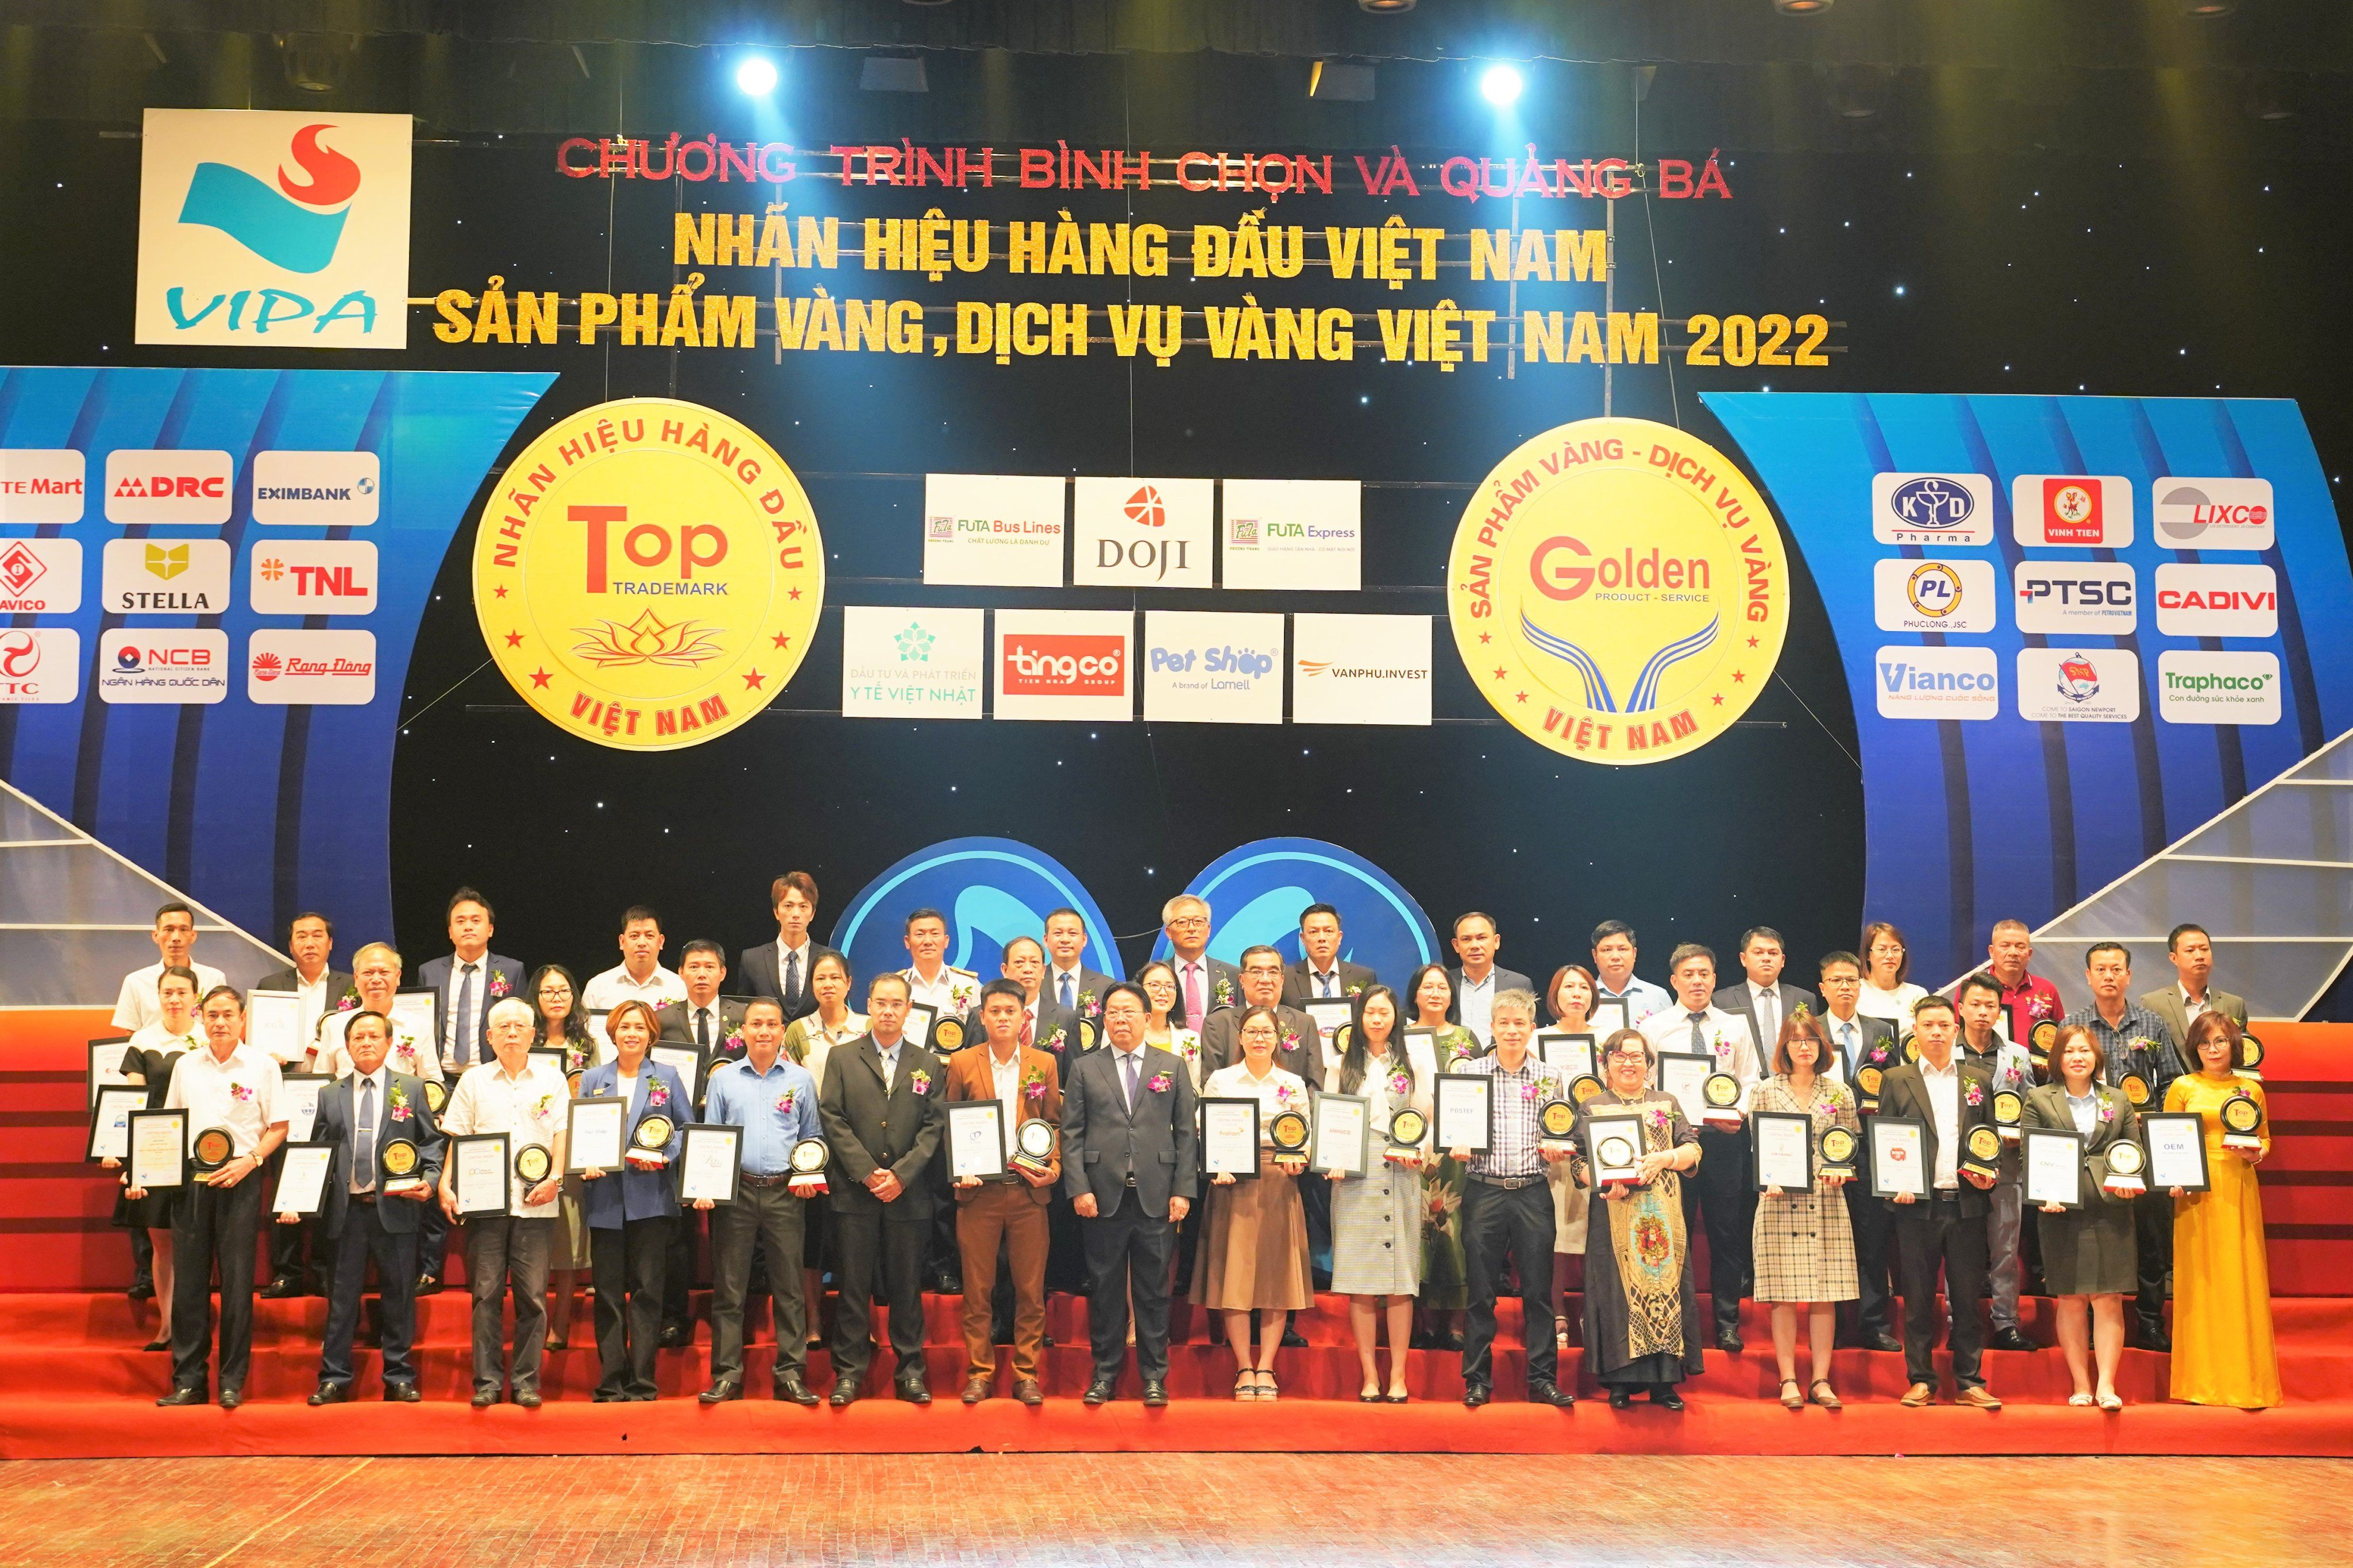 Tổng công ty Tân Cảng Sài Gòn Top 50 “Nhãn hiệu hàng đầu Việt Nam năm 2022” - 2